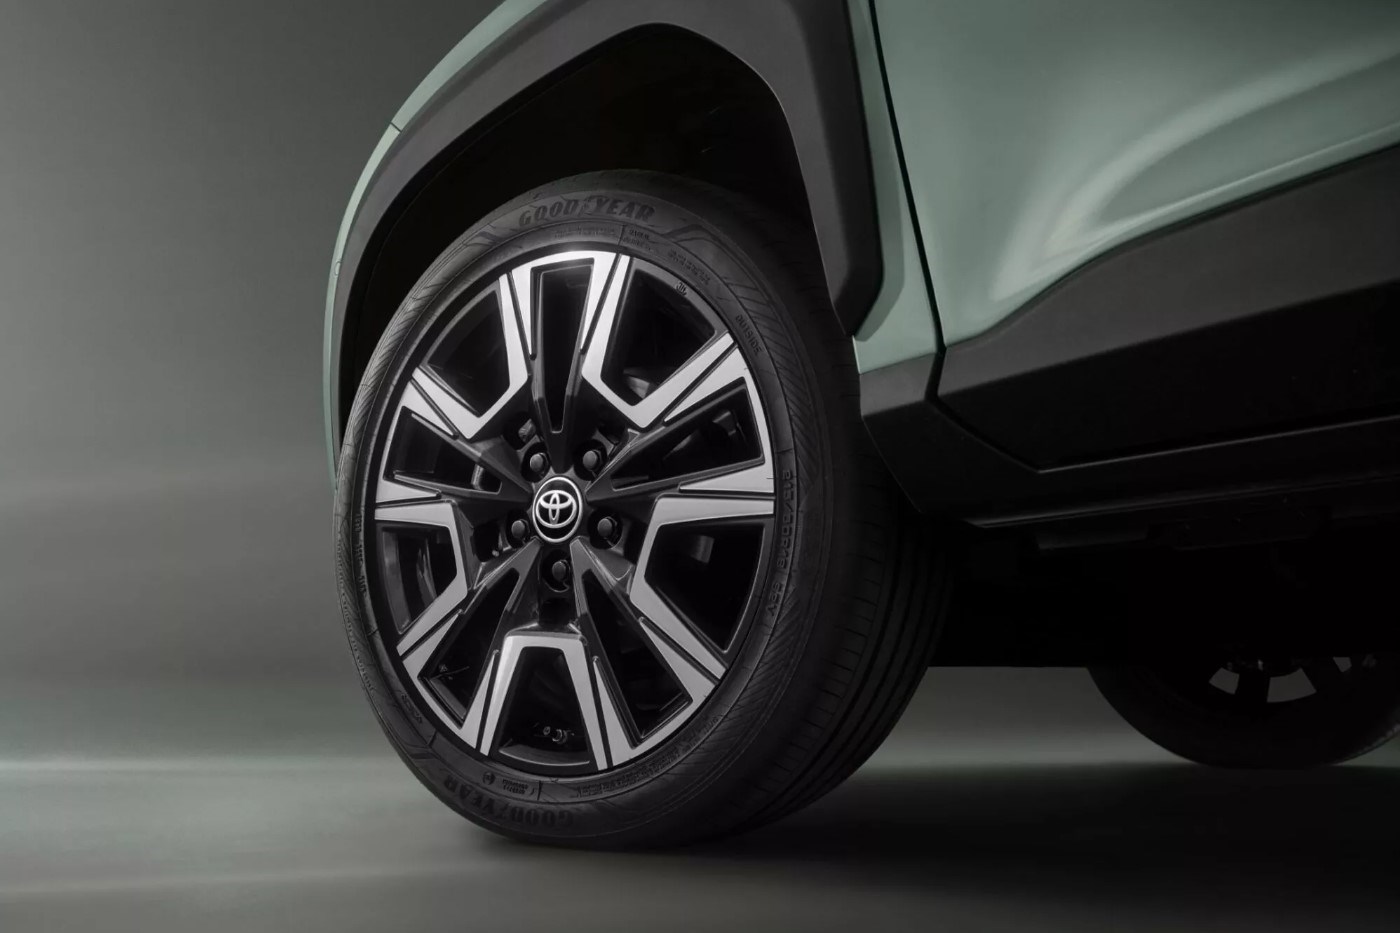 Yeni Toyota Yaris Cross tanıtıldı: İşte tasarımı ve özellikleri